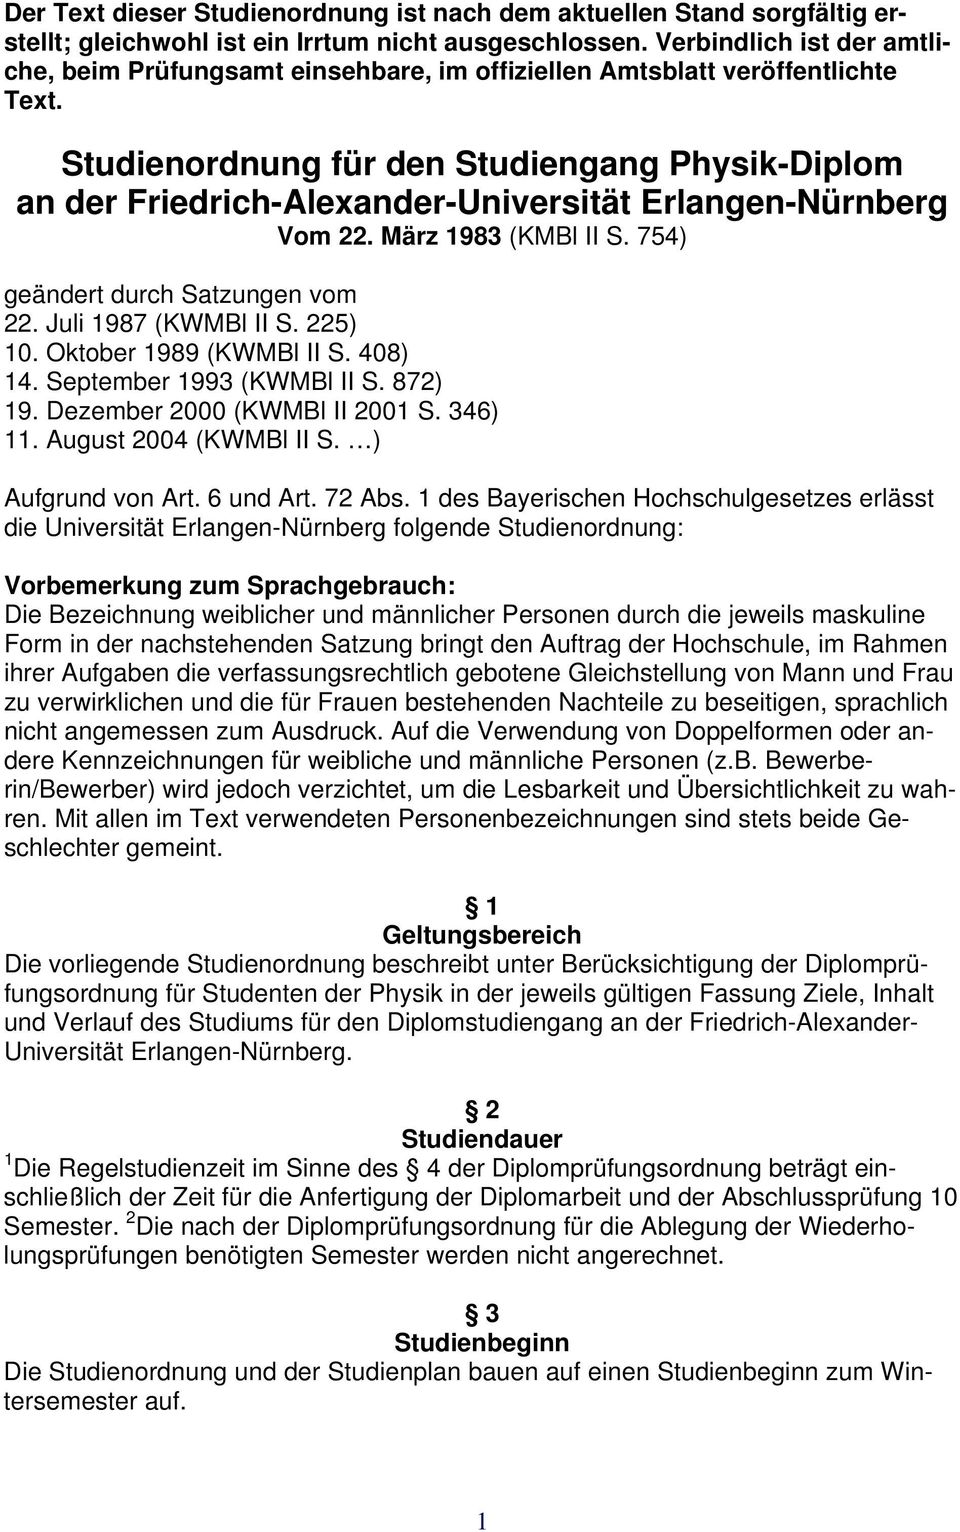 Studienordnung für den Studiengang Physik-Diplom an der Friedrich-Alexander-Universität Erlangen-Nürnberg Vom 22. März 1983 (KMBl II S. 754) geändert durch Satzungen vom 22. Juli 1987 (KWMBl II S.